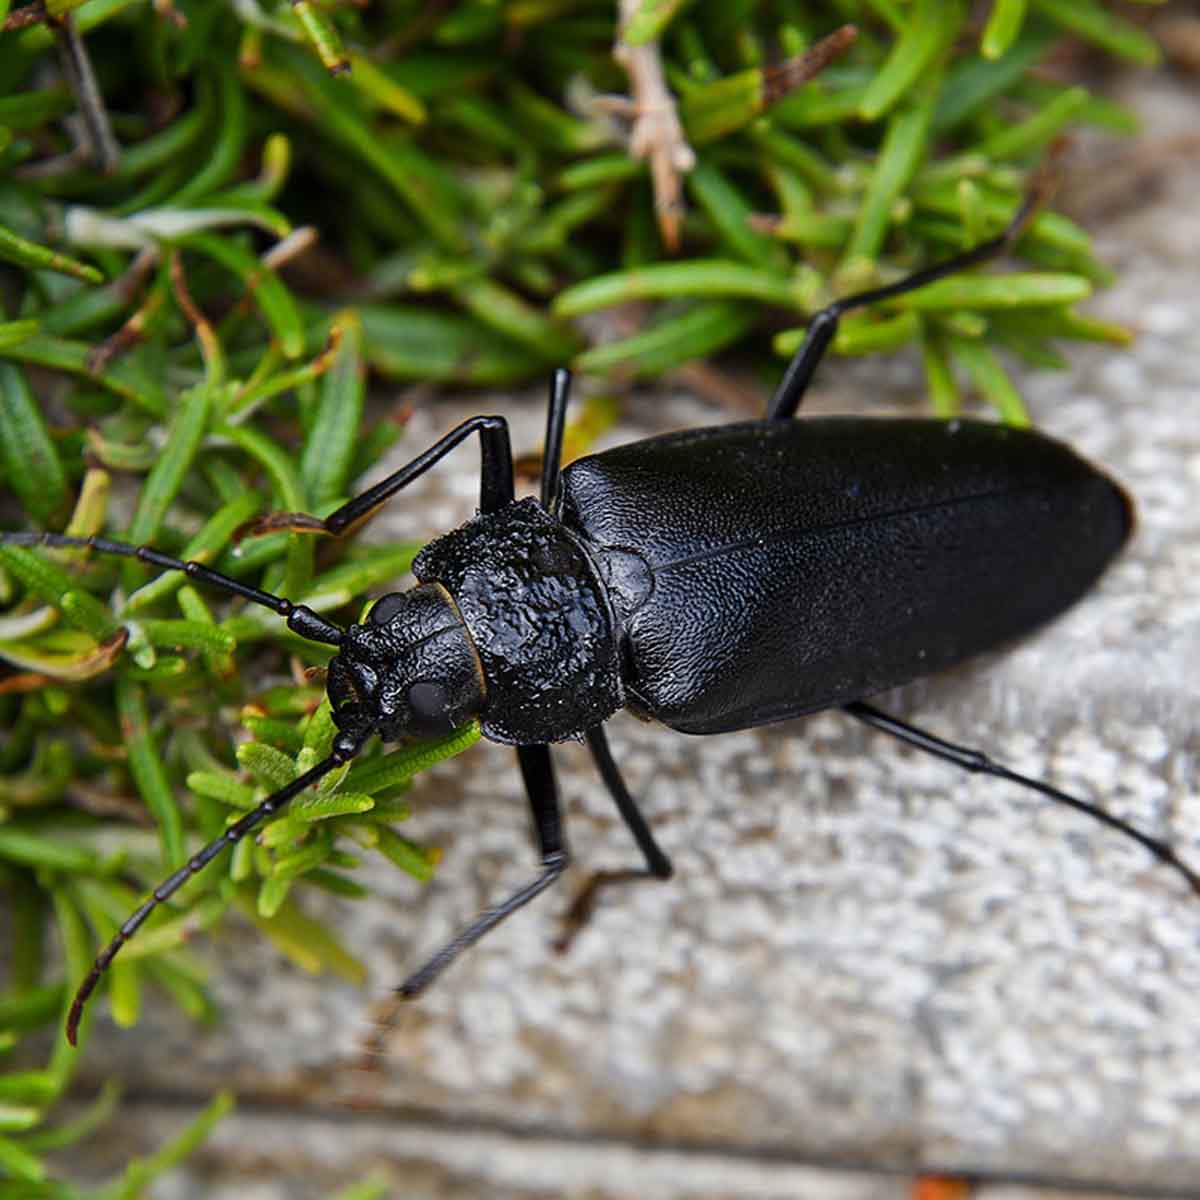 A black ground beetle on sidewalk